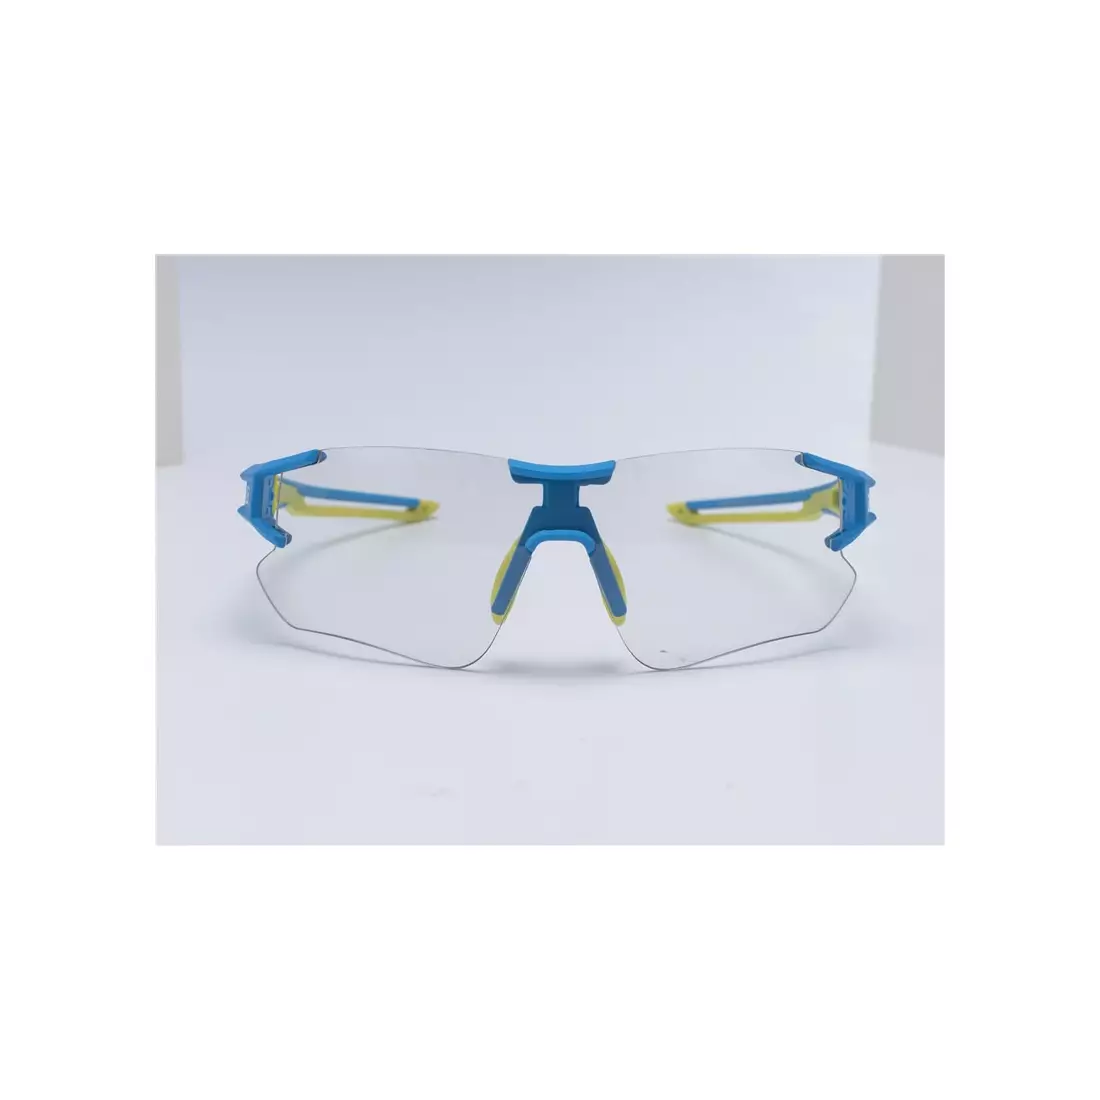 Rockbros 10127 kerékpár / sport szemüveg fotokróm kék-zölddel